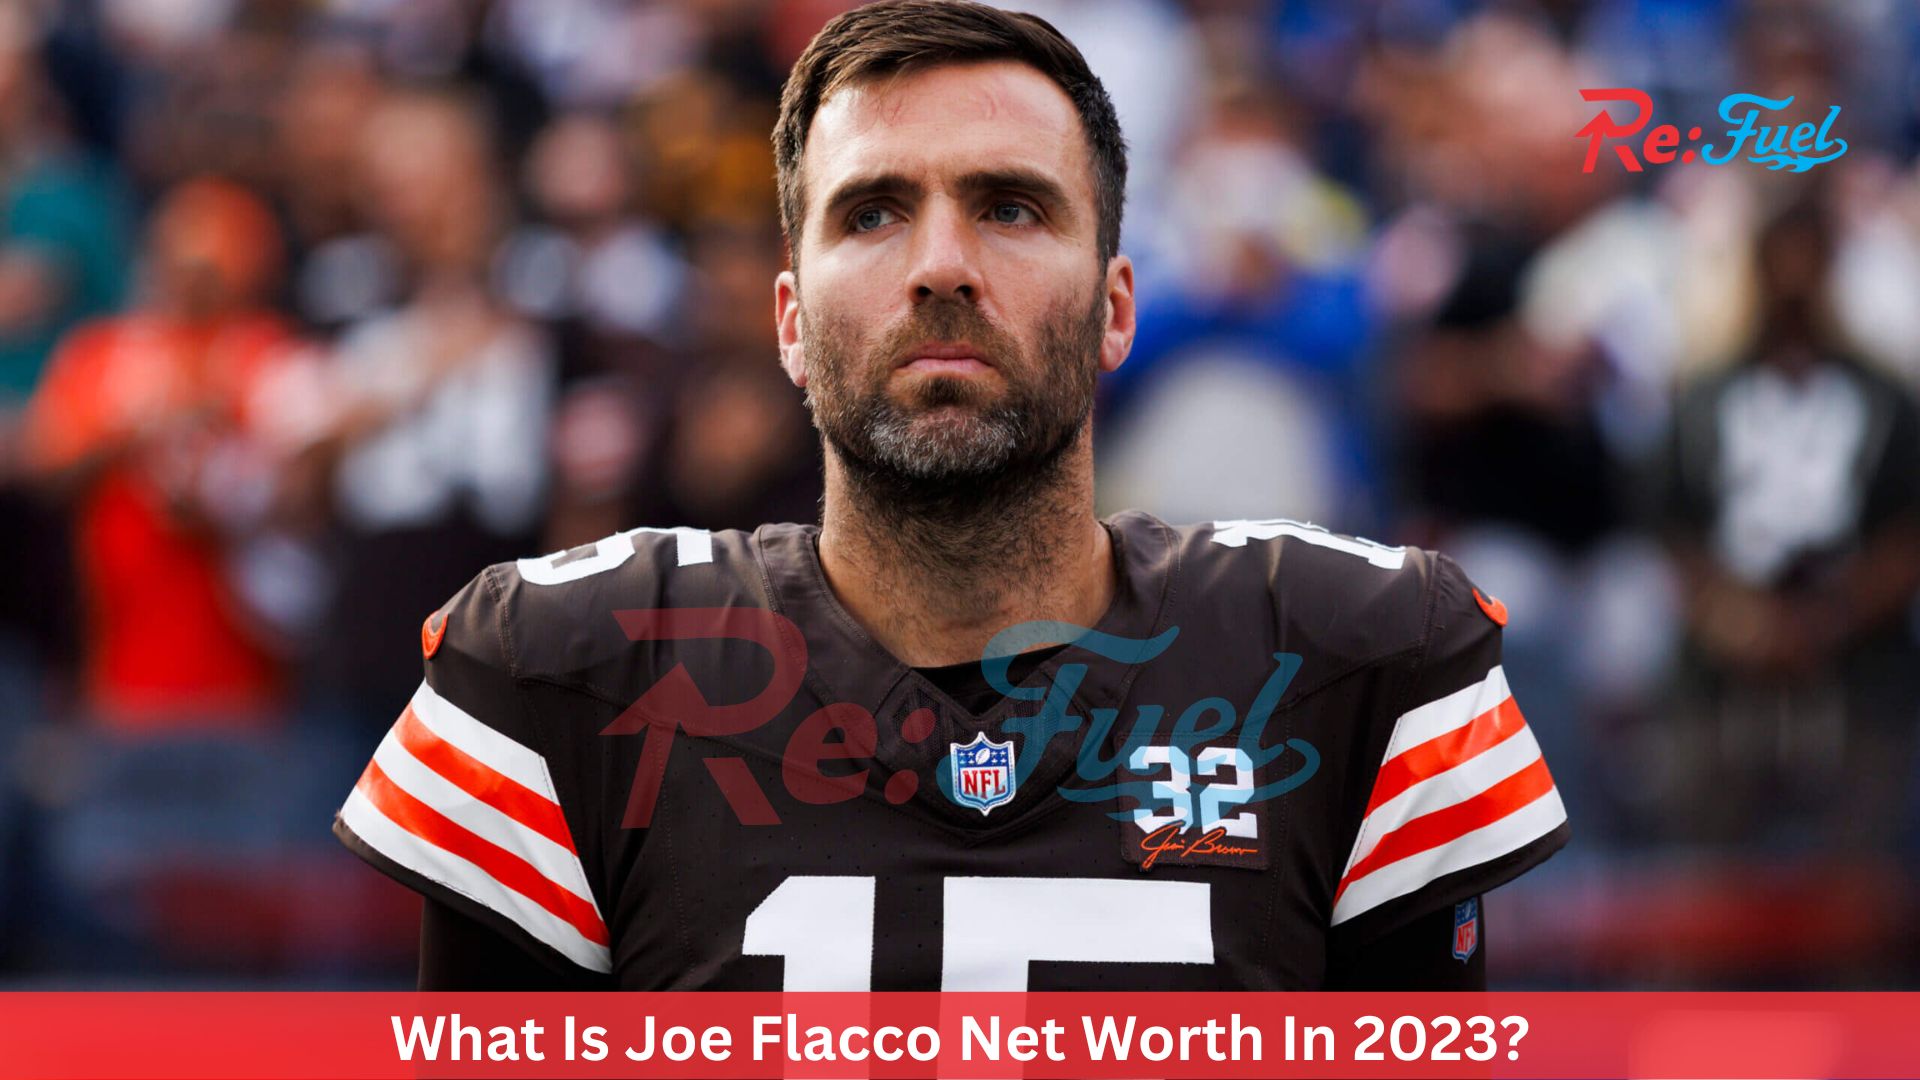 What Is Joe Flacco Net Worth In 2023?